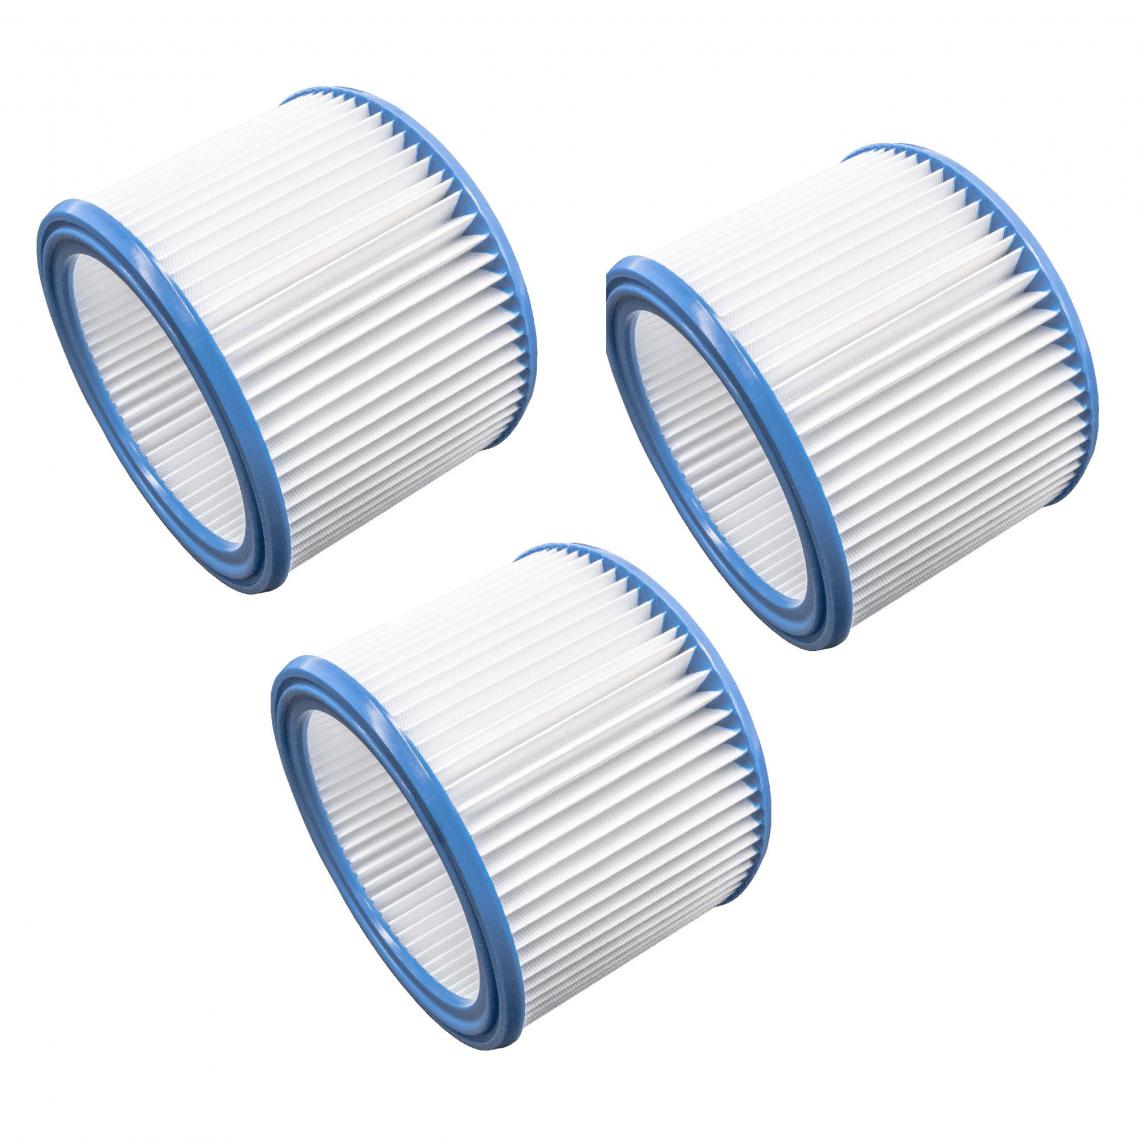 Vhbw - vhbw Set de filtres 3x Filtre plissé compatible avec Nilfisk Attix classe de poussière M aspirateur à sec ou humide - Filtre à cartouche - Accessoire entretien des sols